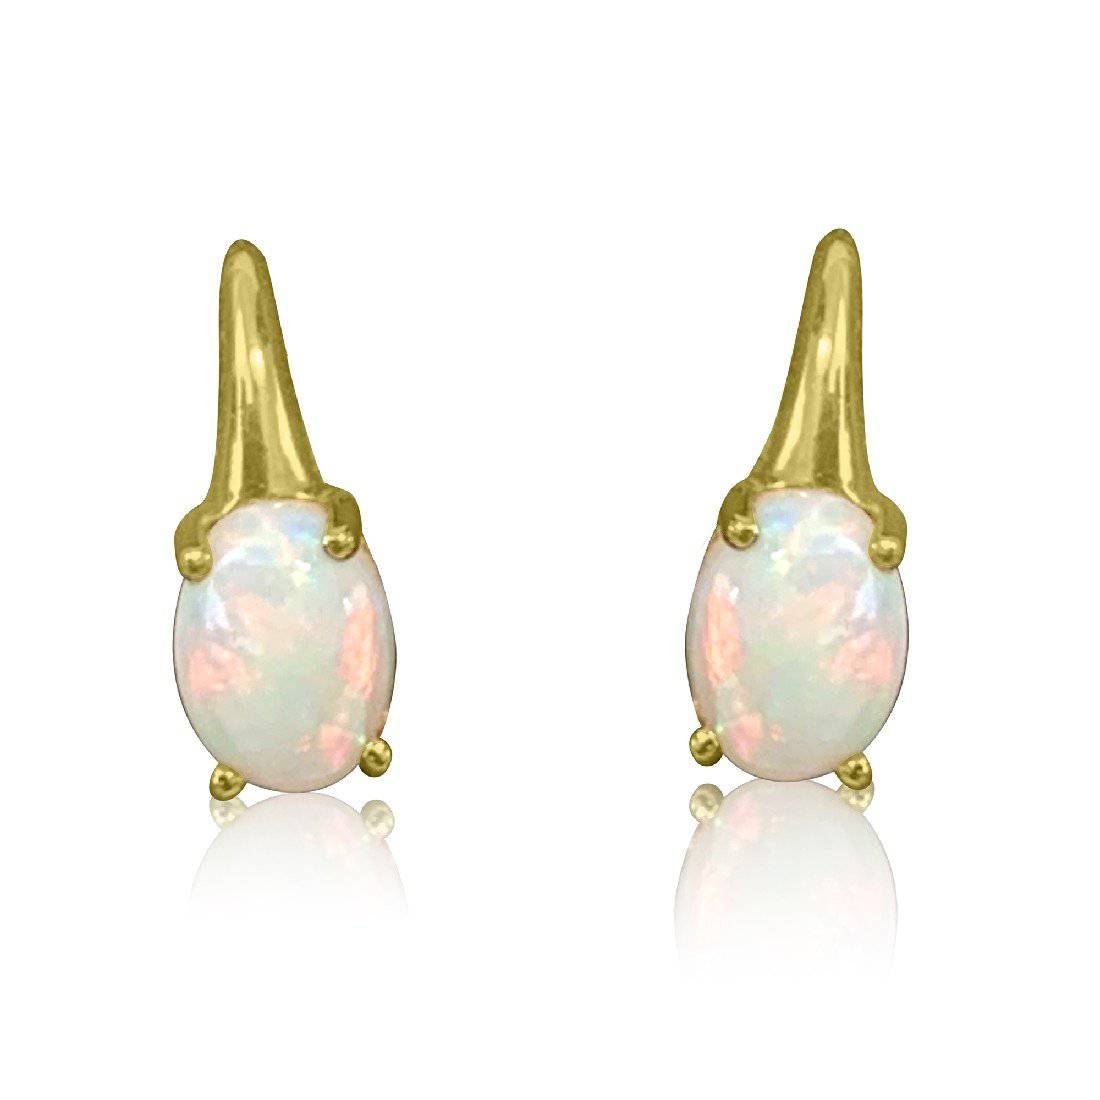 18kt Yellow Gold Shepard Hook White Opal earrings - Masterpiece Jewellery Opal & Gems Sydney Australia | Online Shop